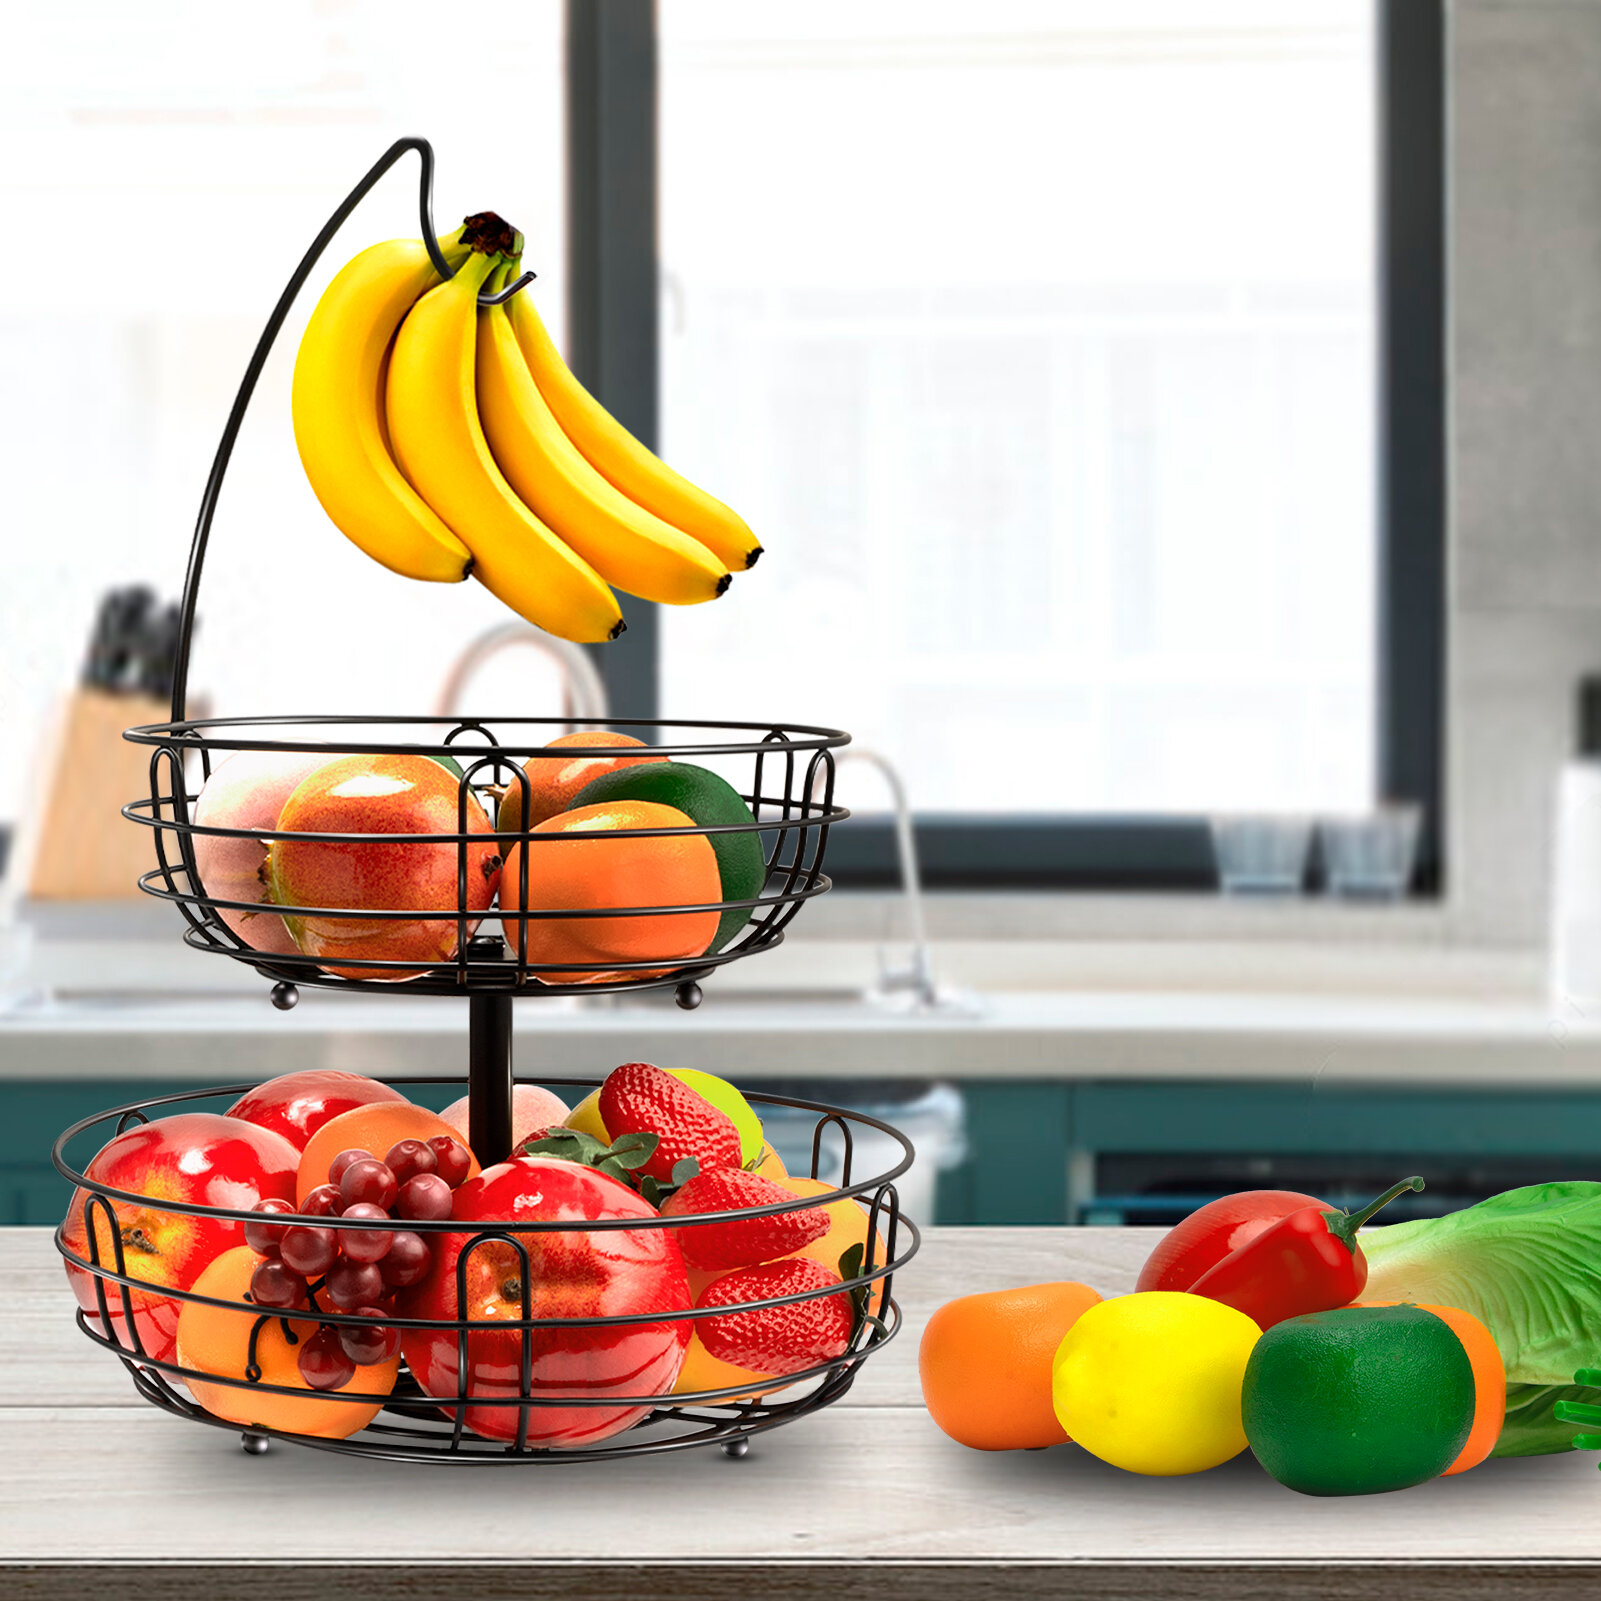 2-Tier Iron Fruit Vegetable Basket Holder Bowl Stand kitchen Home Decor Black 